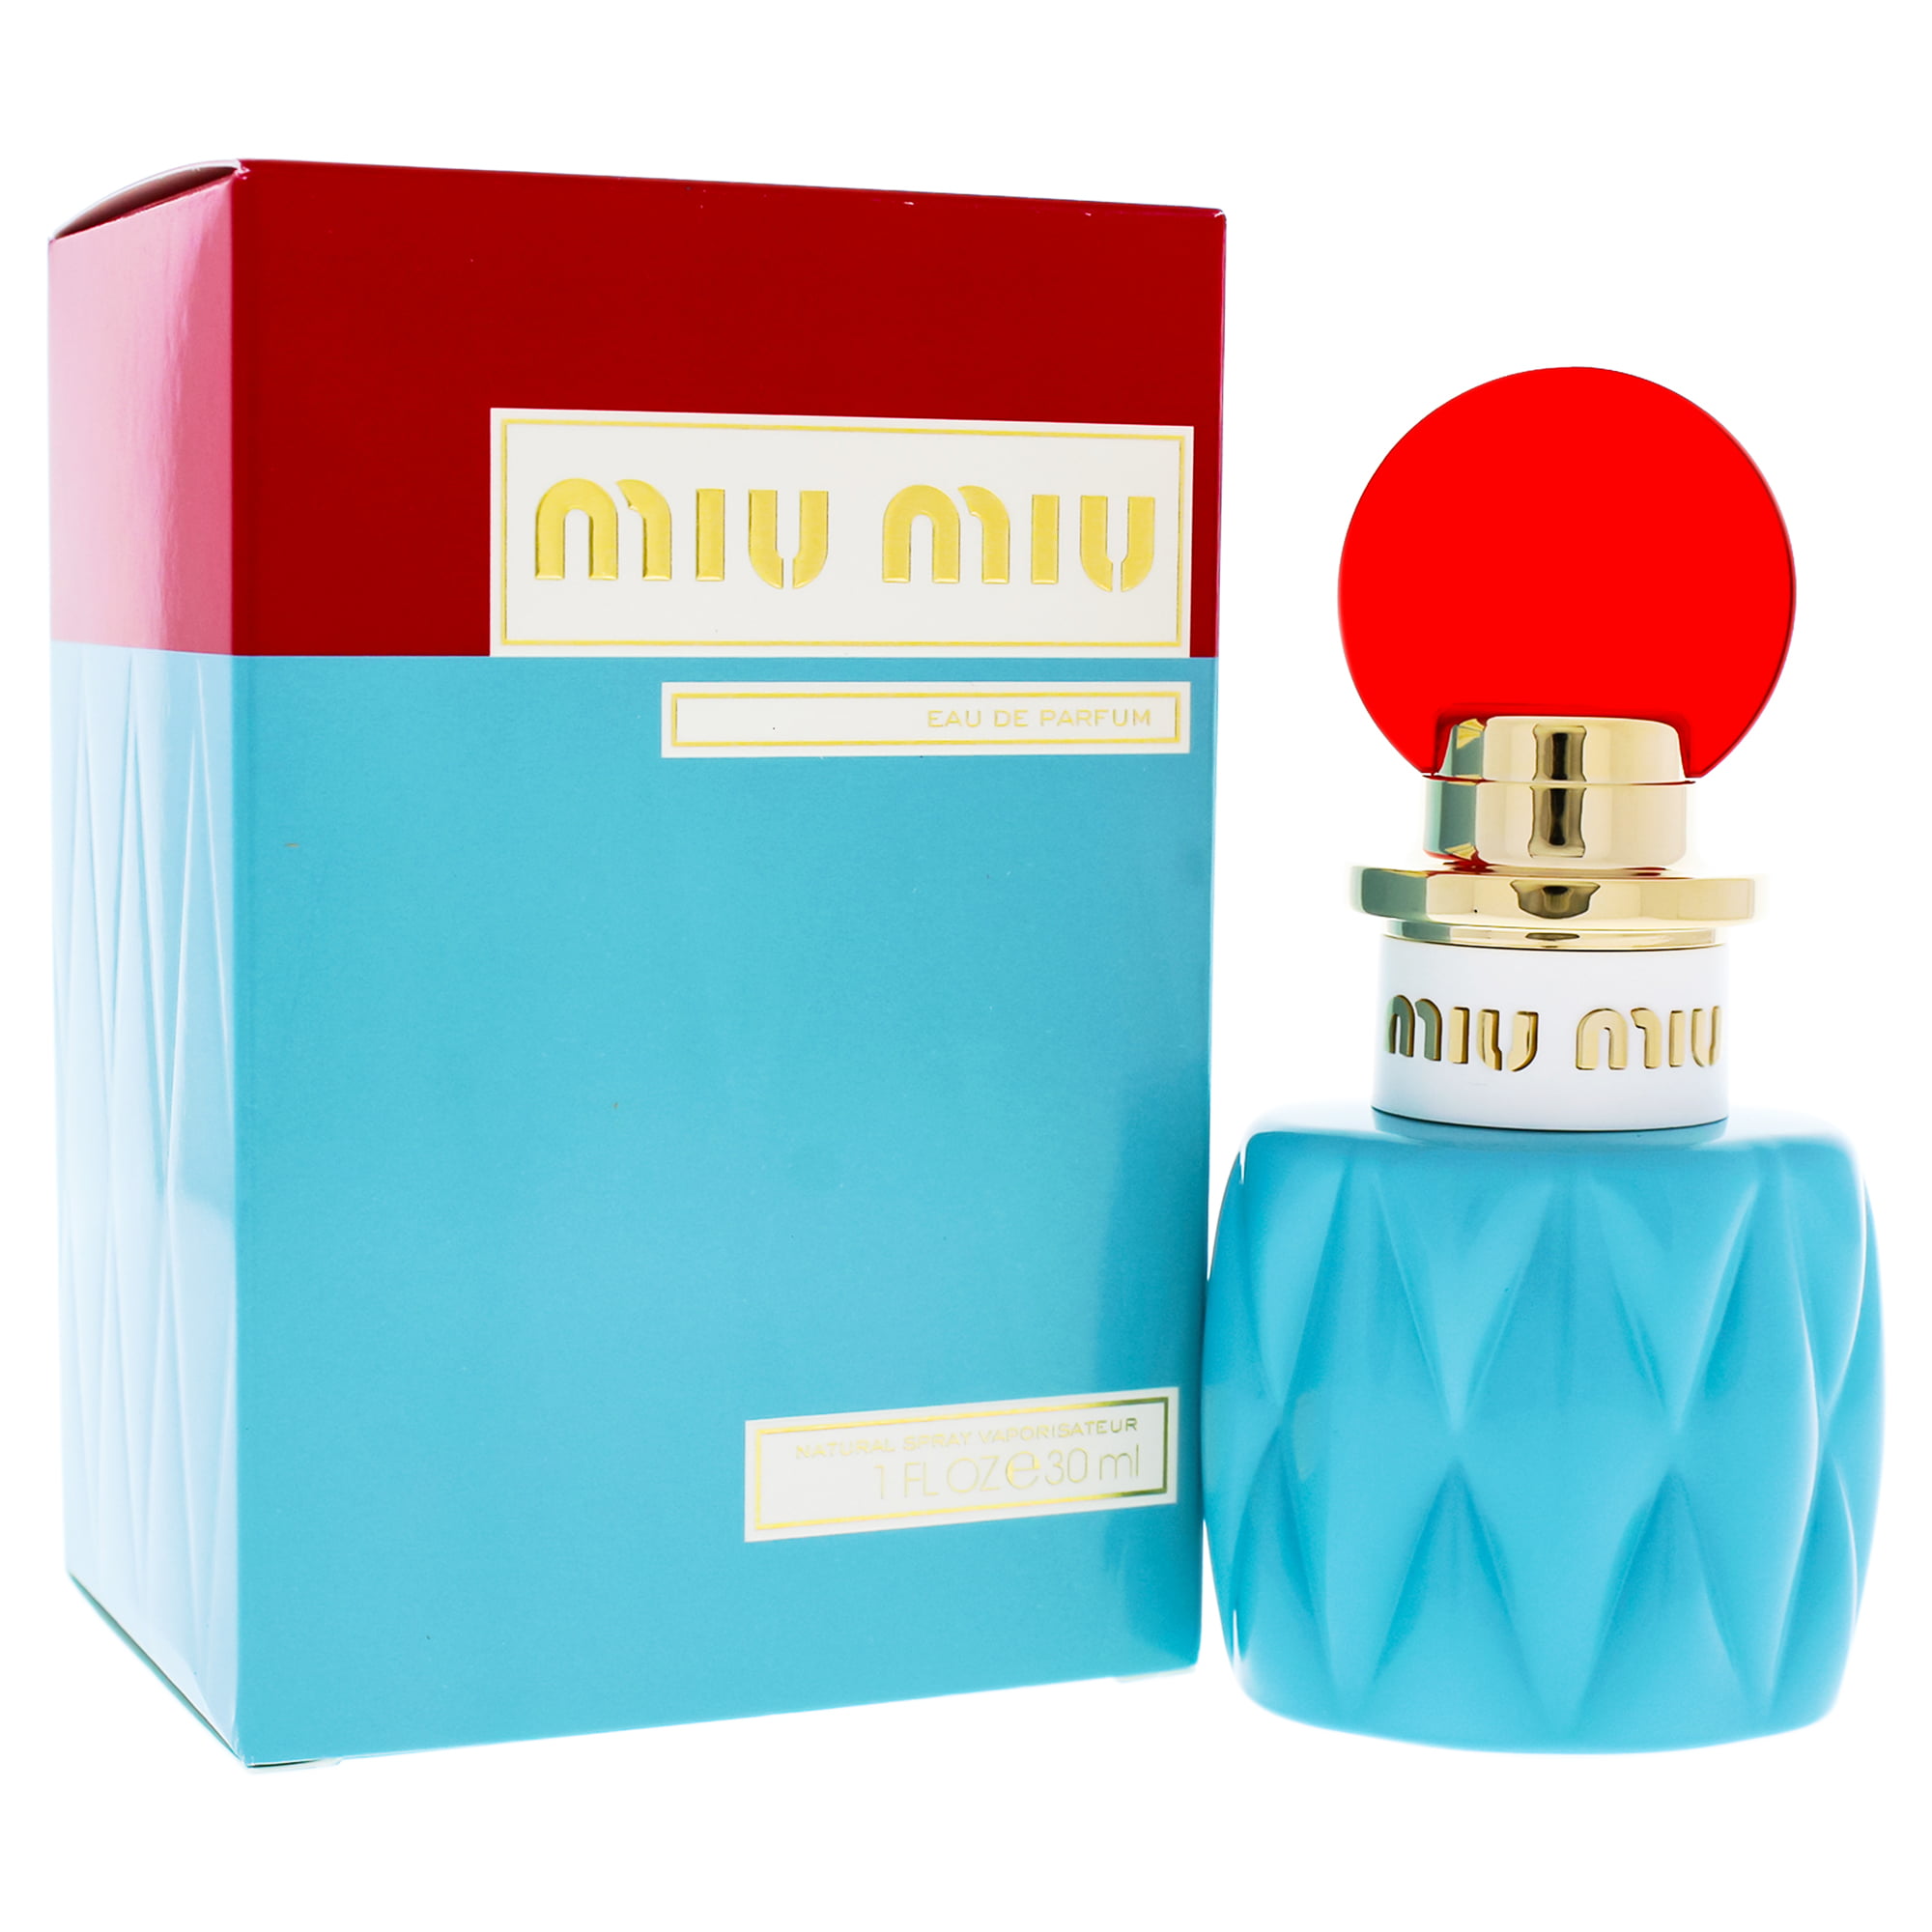 Miu Miu - Miu Miu Eau de Parfum Perfume for Women, 1 Oz Mini & Travel ...